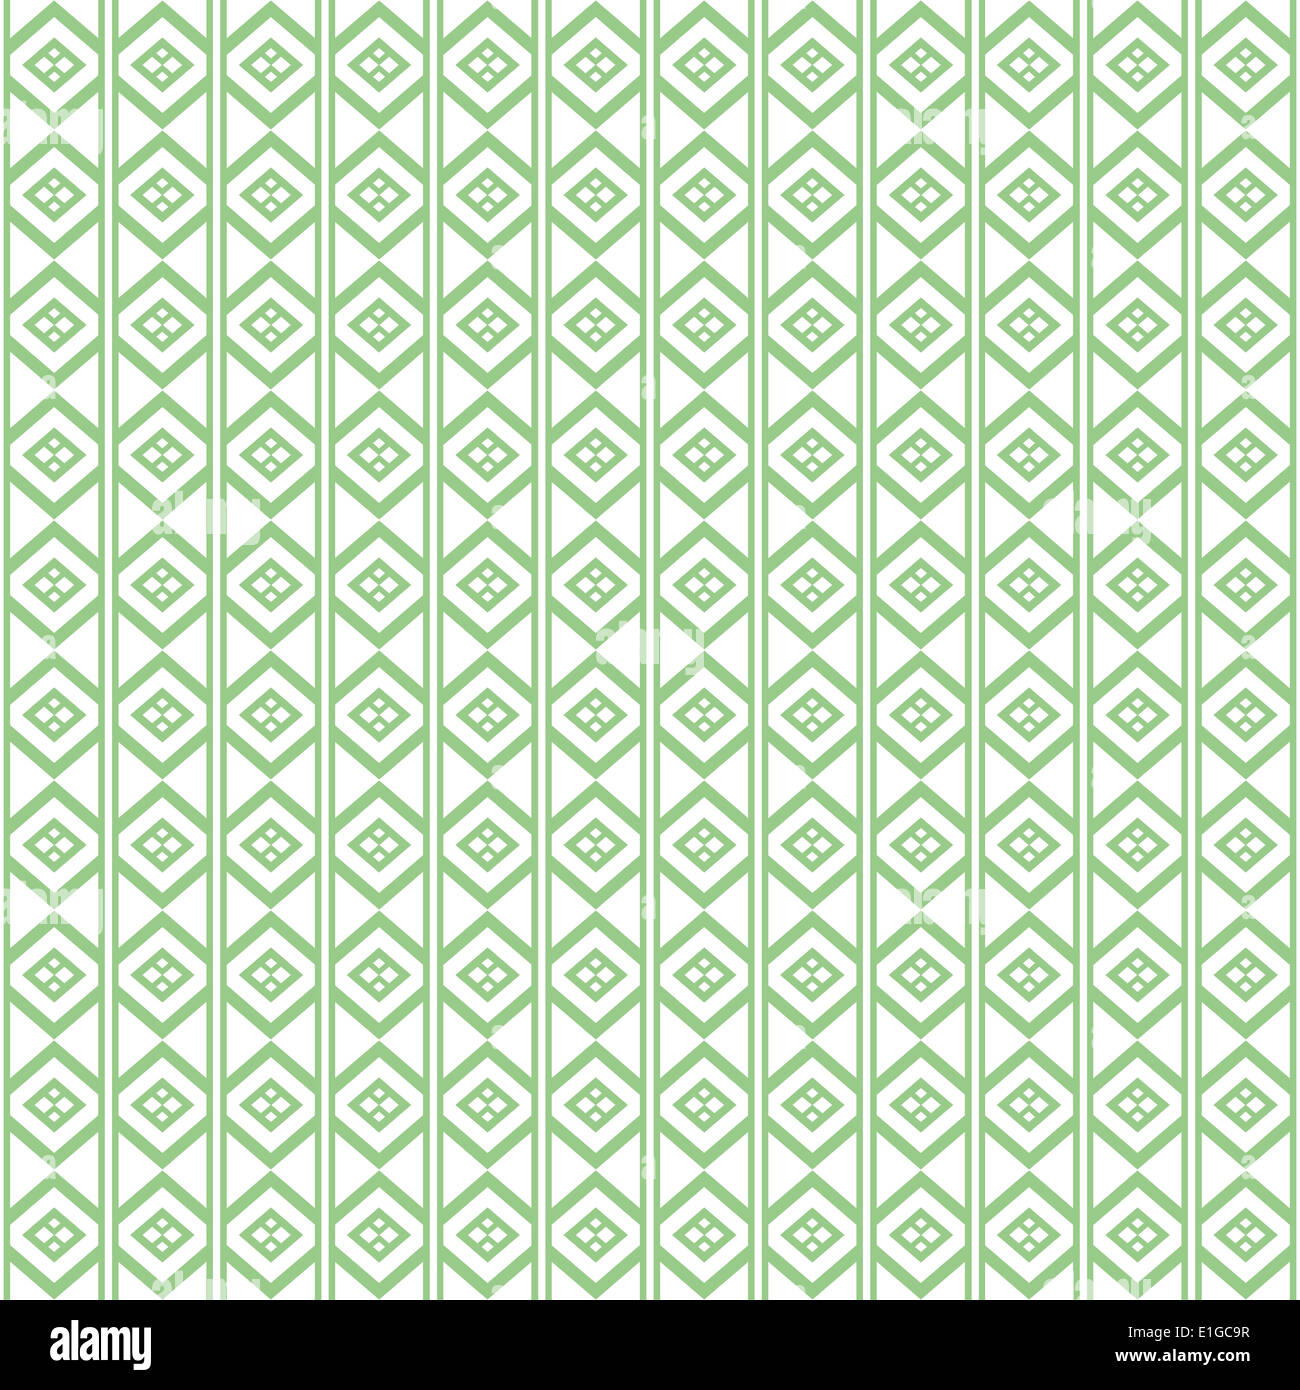 Background of seamless geometric pattern Stock Photo